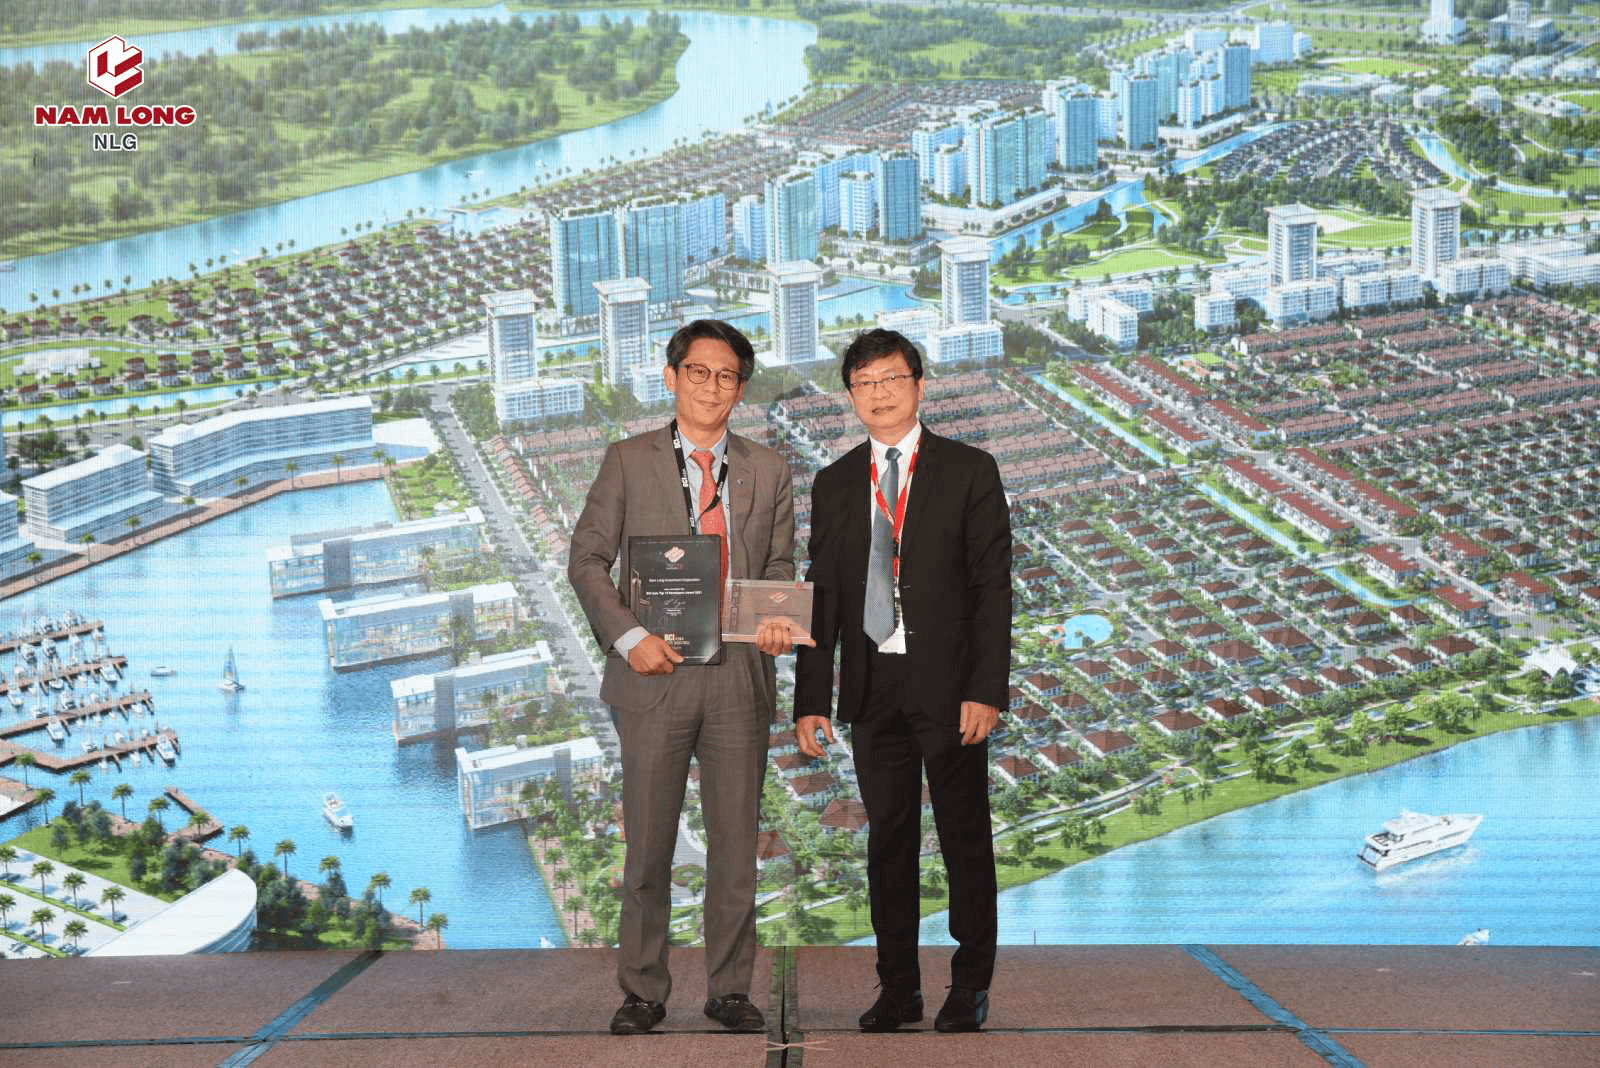 BCI ASIA: Nam Long (HOSE: NLG) vào top 10 chủ đầu tư nổi bật nhất Việt Nam 2021